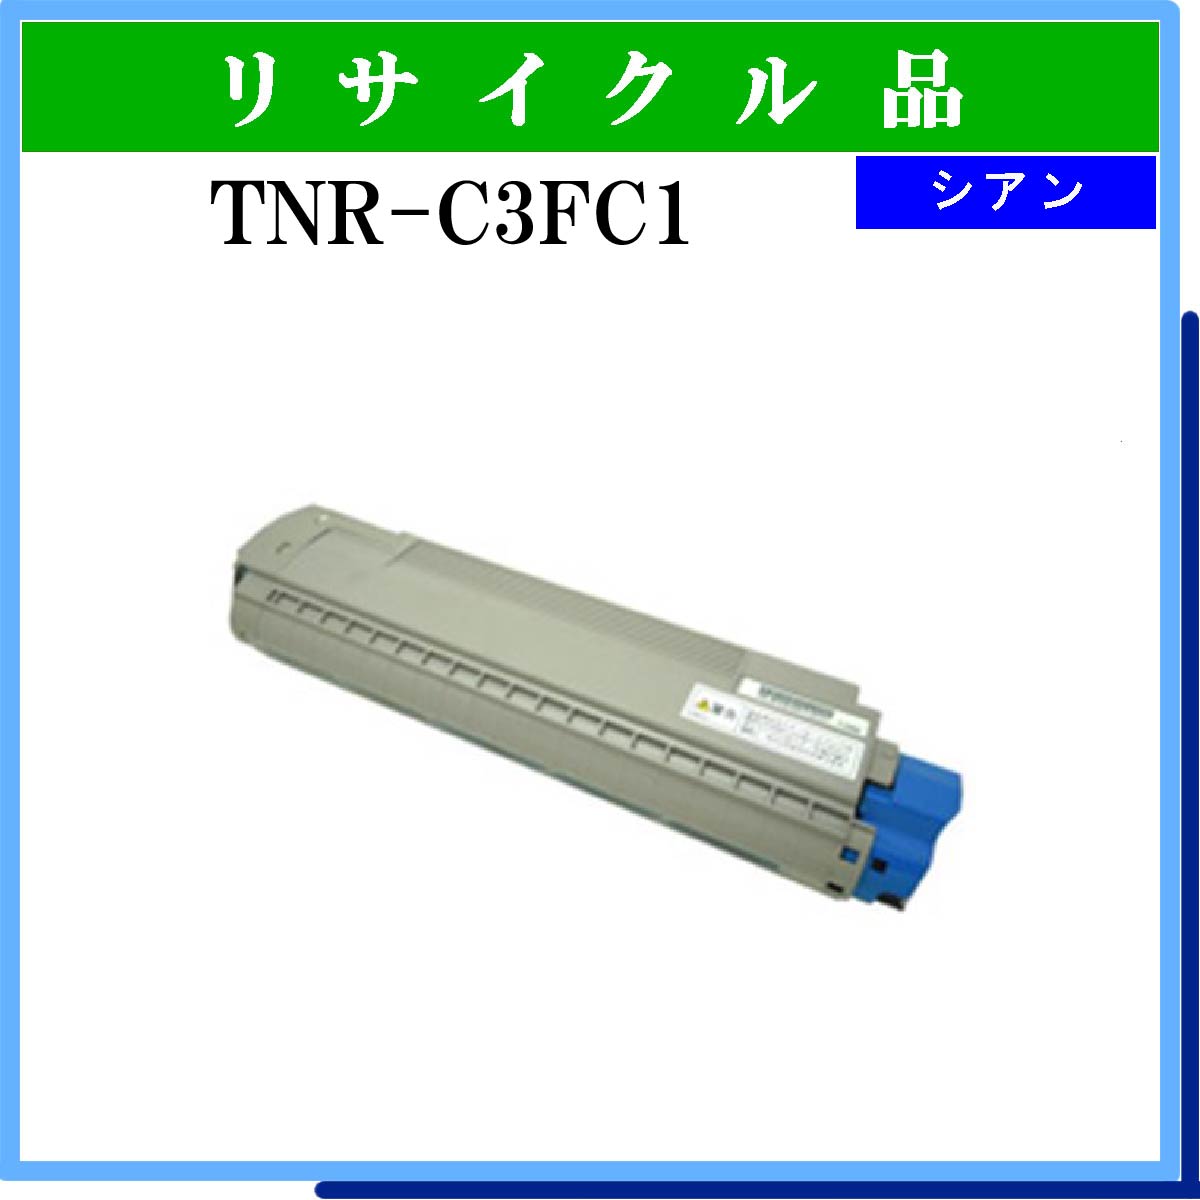 TNR-C3FC1